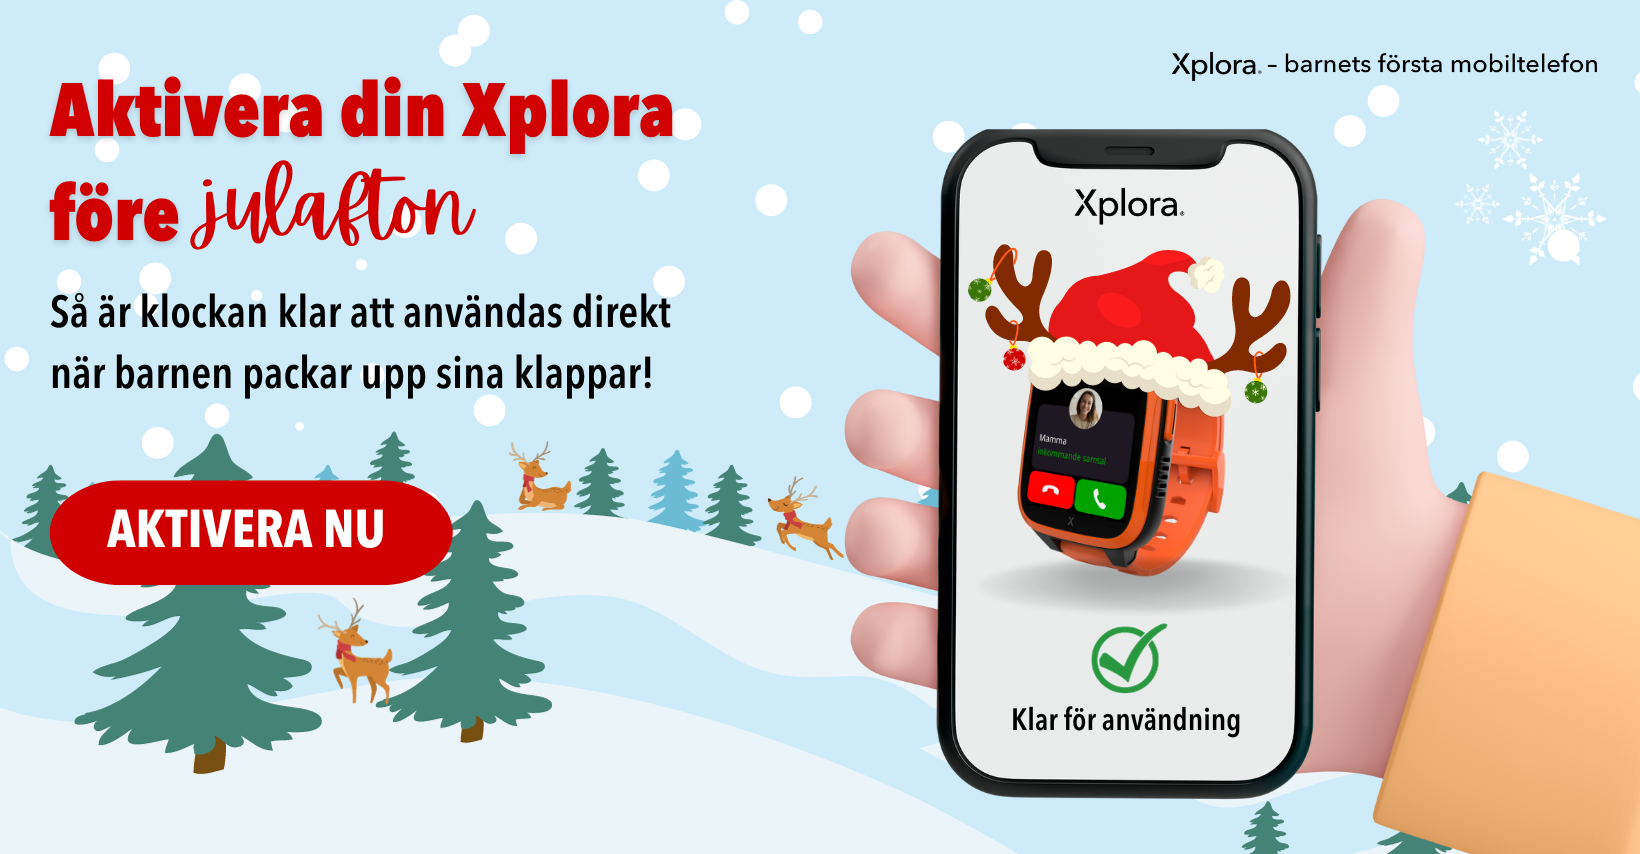 Aktivera din Xplora och gör Julaftonen fantastisk i 3 enkla och effektiva eteg